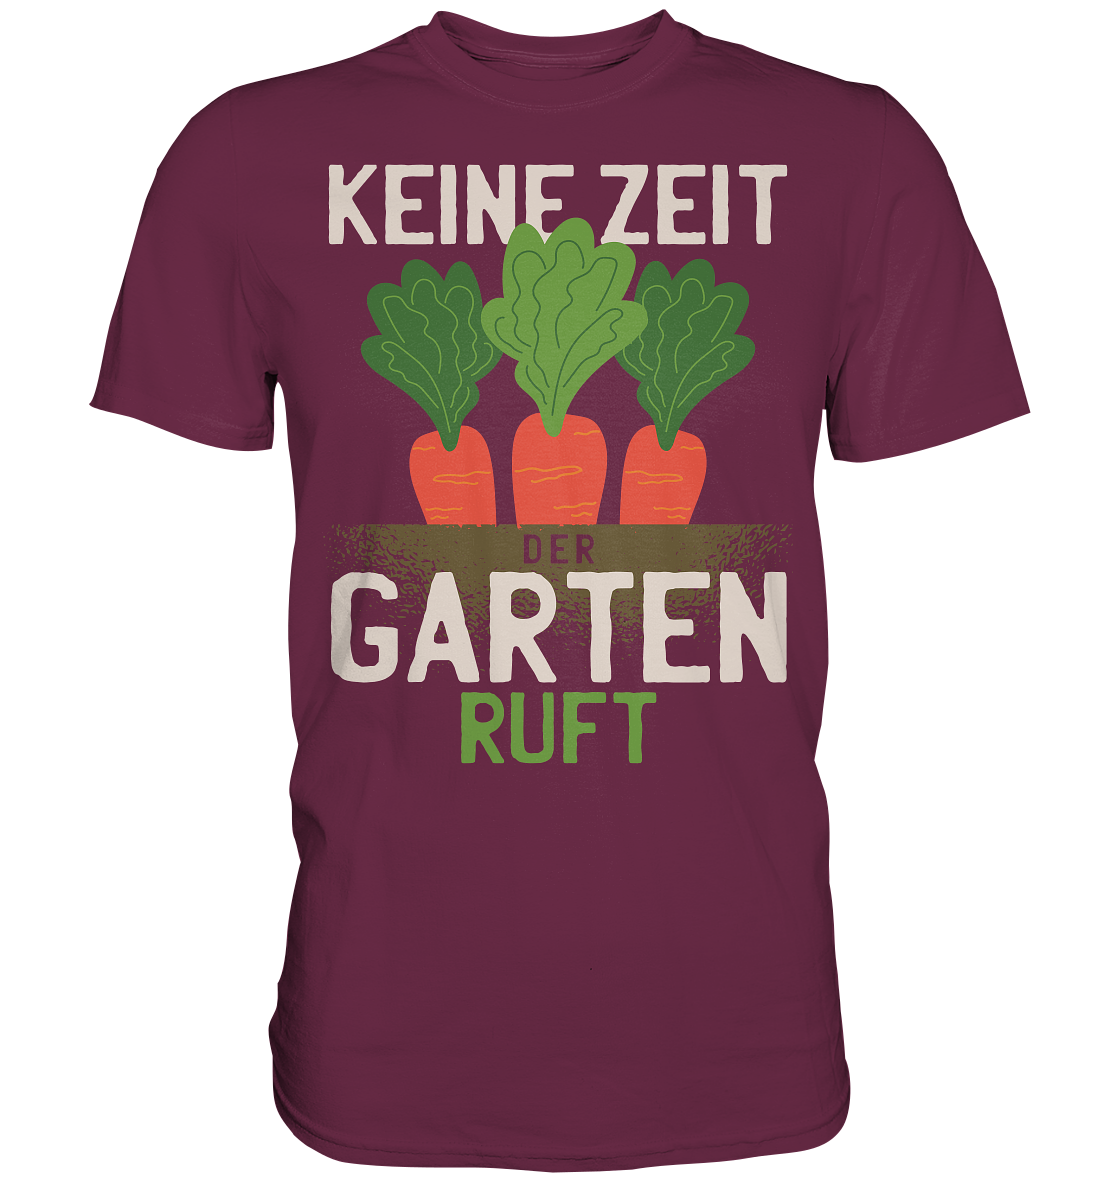 Werner Garten - Premium Shirt - Online Kaufhaus München